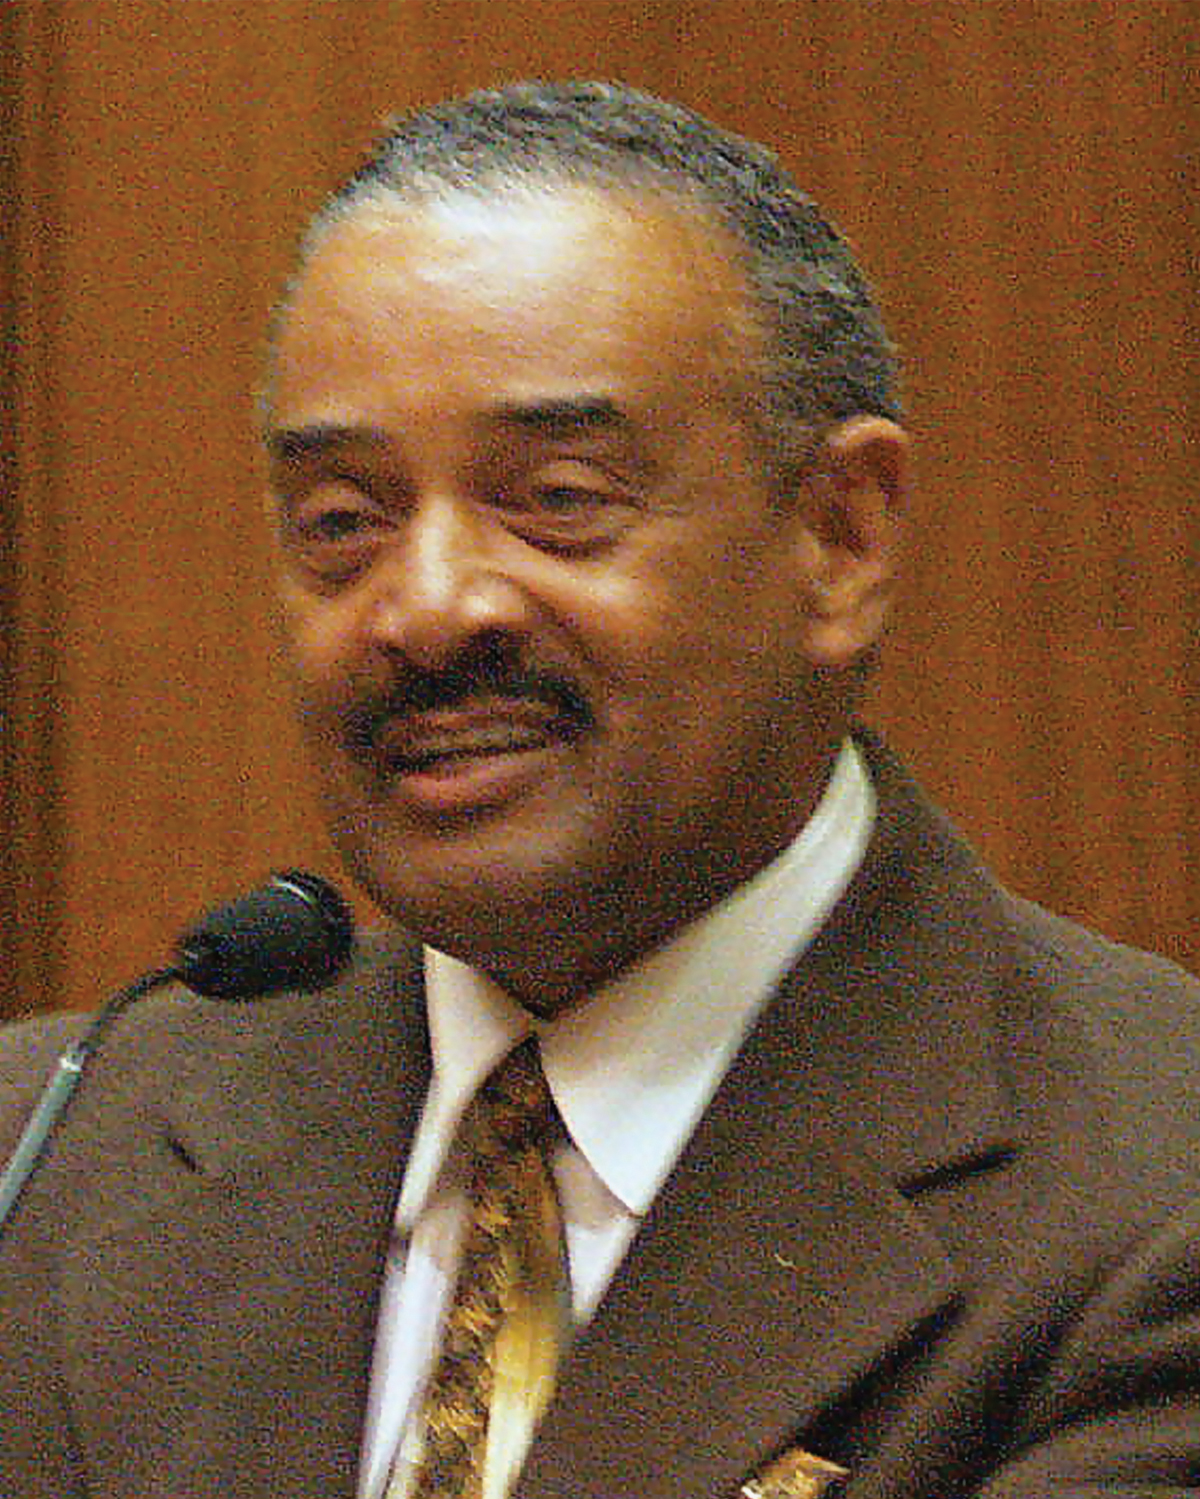  senator Vernon Smith